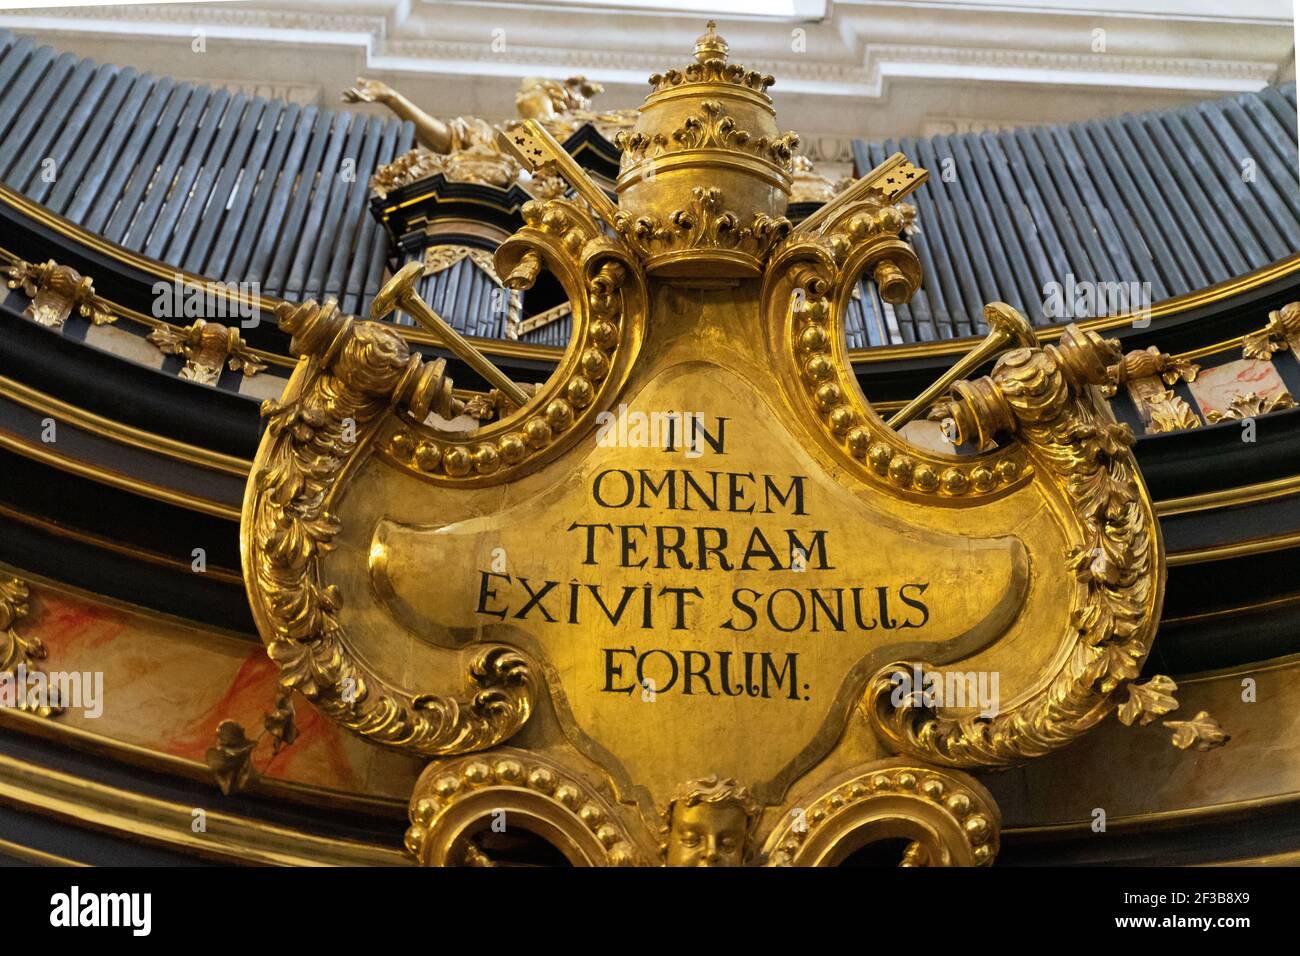 Écusson or de couleur dorée avec Omnem Terram Exivit Sonus Eorum (en latin) slogan sur elle de Psaume 18:5 Banque D'Images